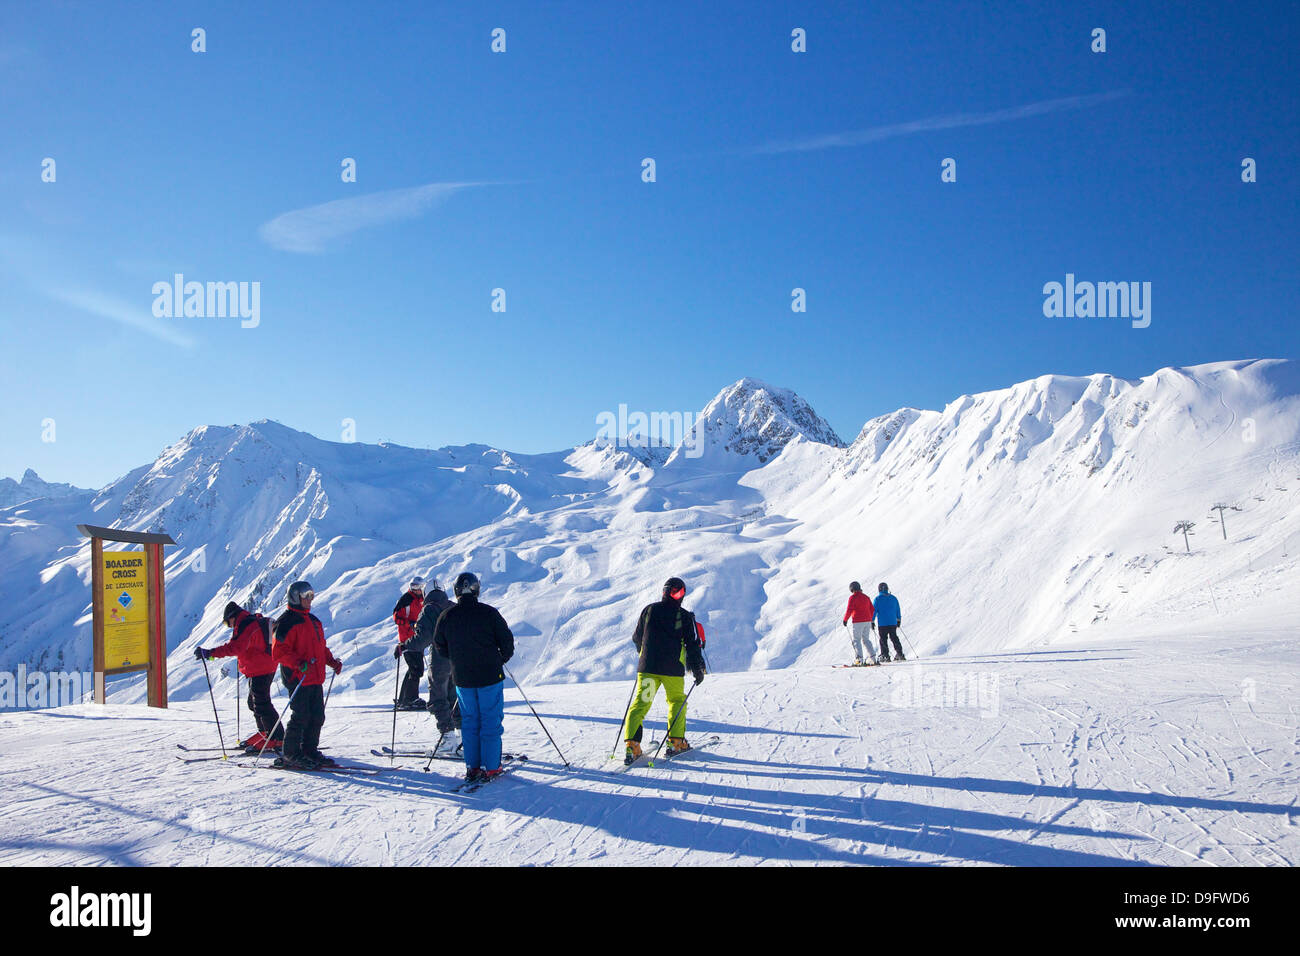 Skifahrer auf der Piste am frühen Morgen im Winter, La Plagne, Französische Alpen, Frankreich Stockfoto